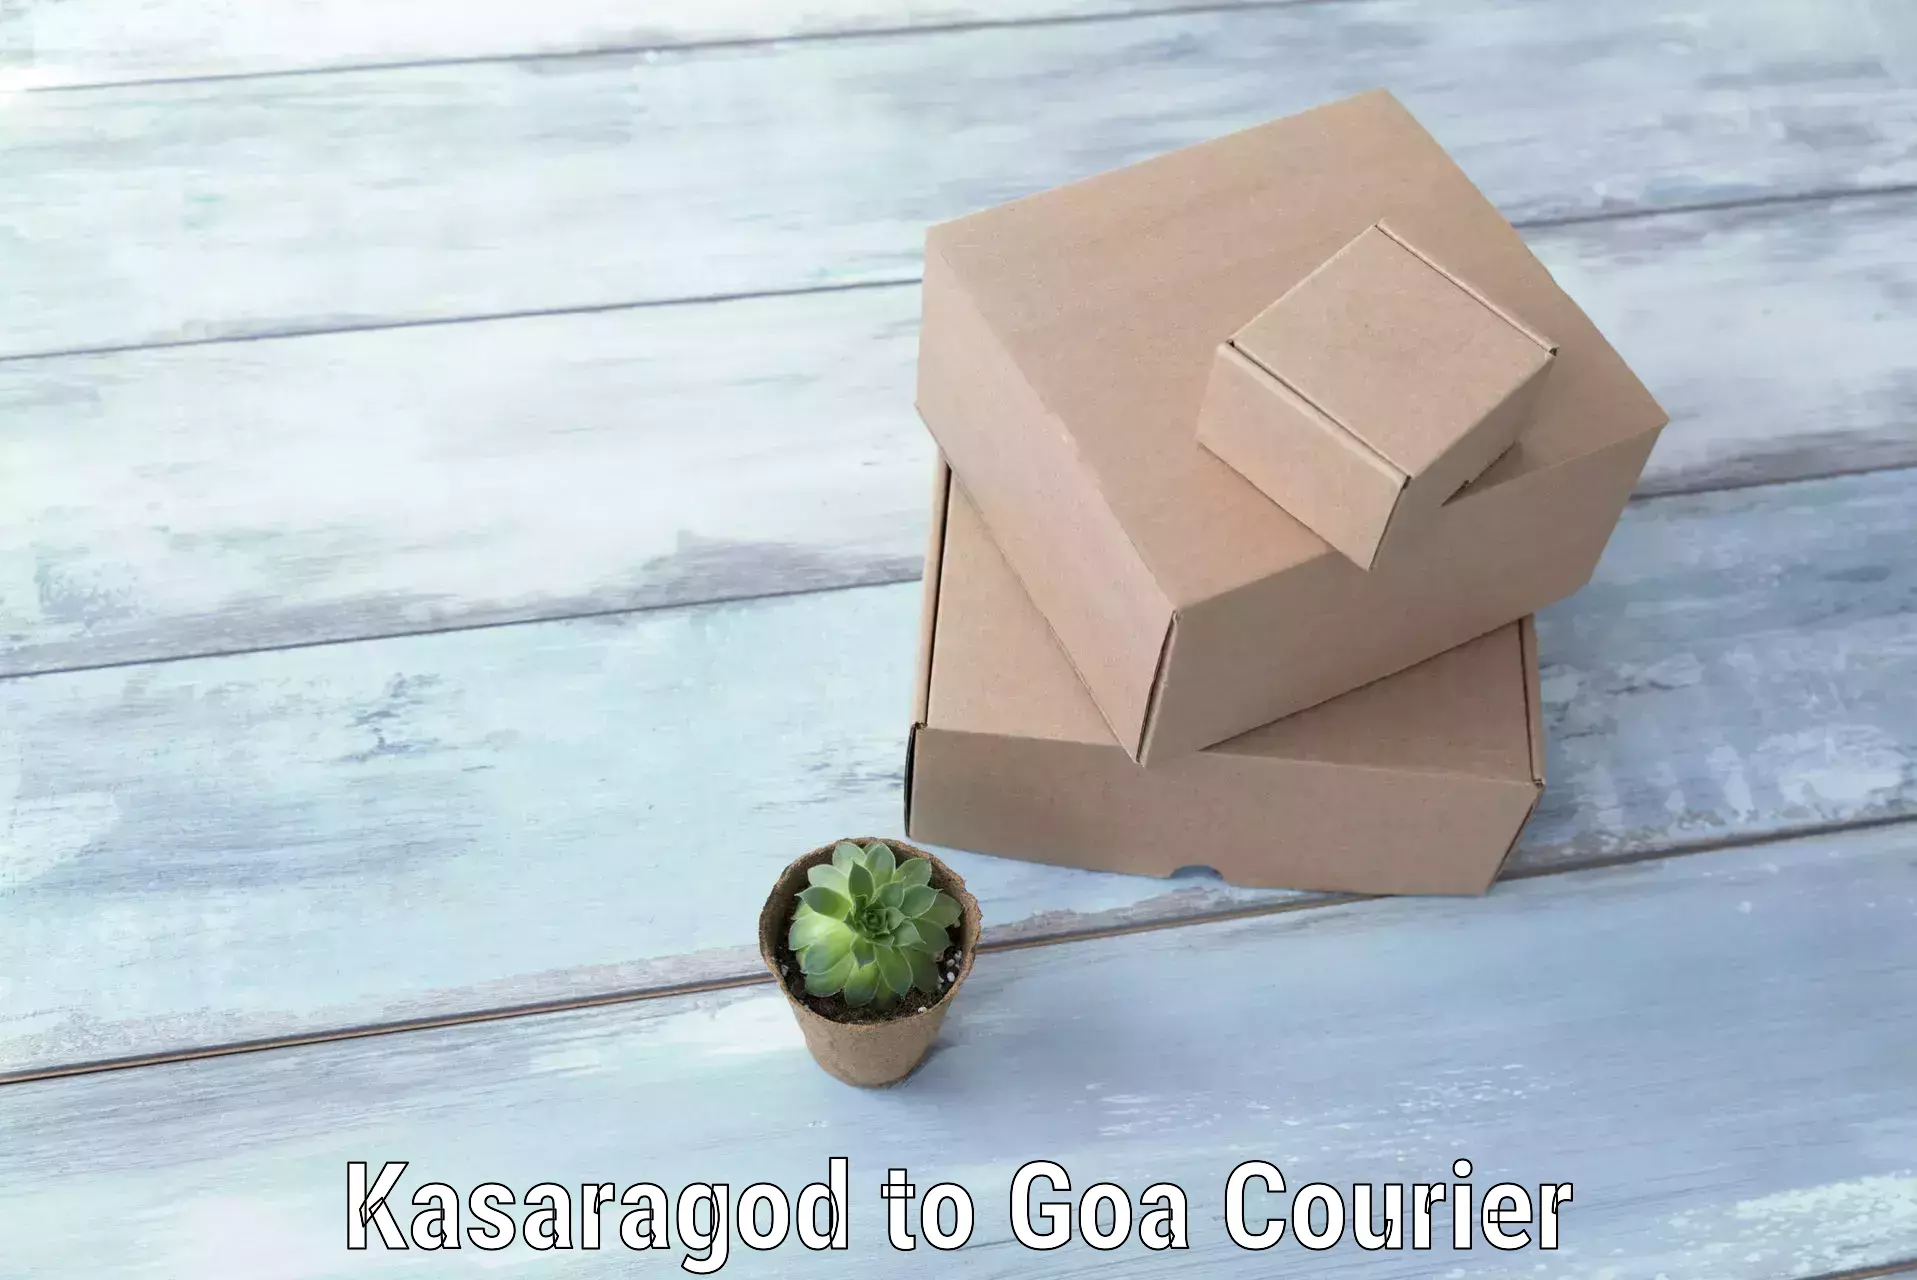 Door-to-door baggage service Kasaragod to Goa